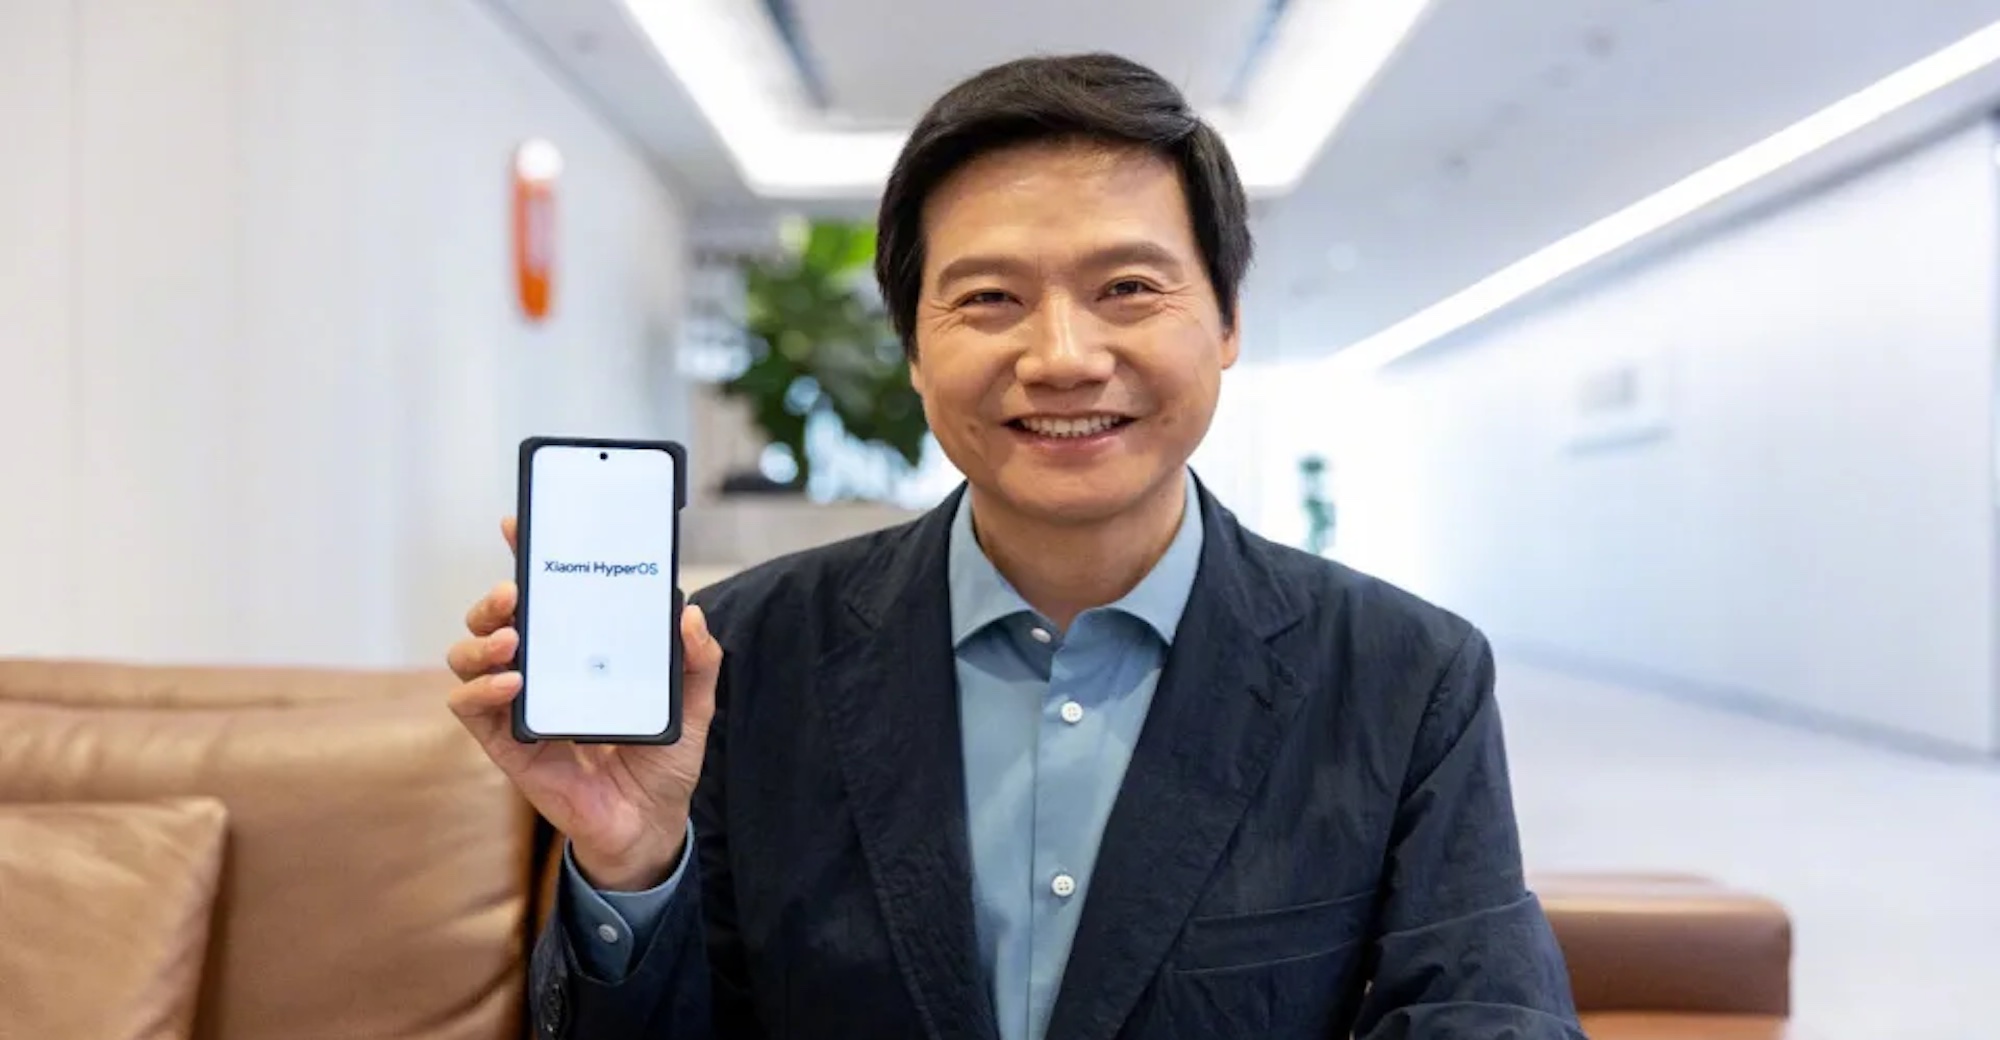 Lei Jun Unveils Xiaomi Hyper OS